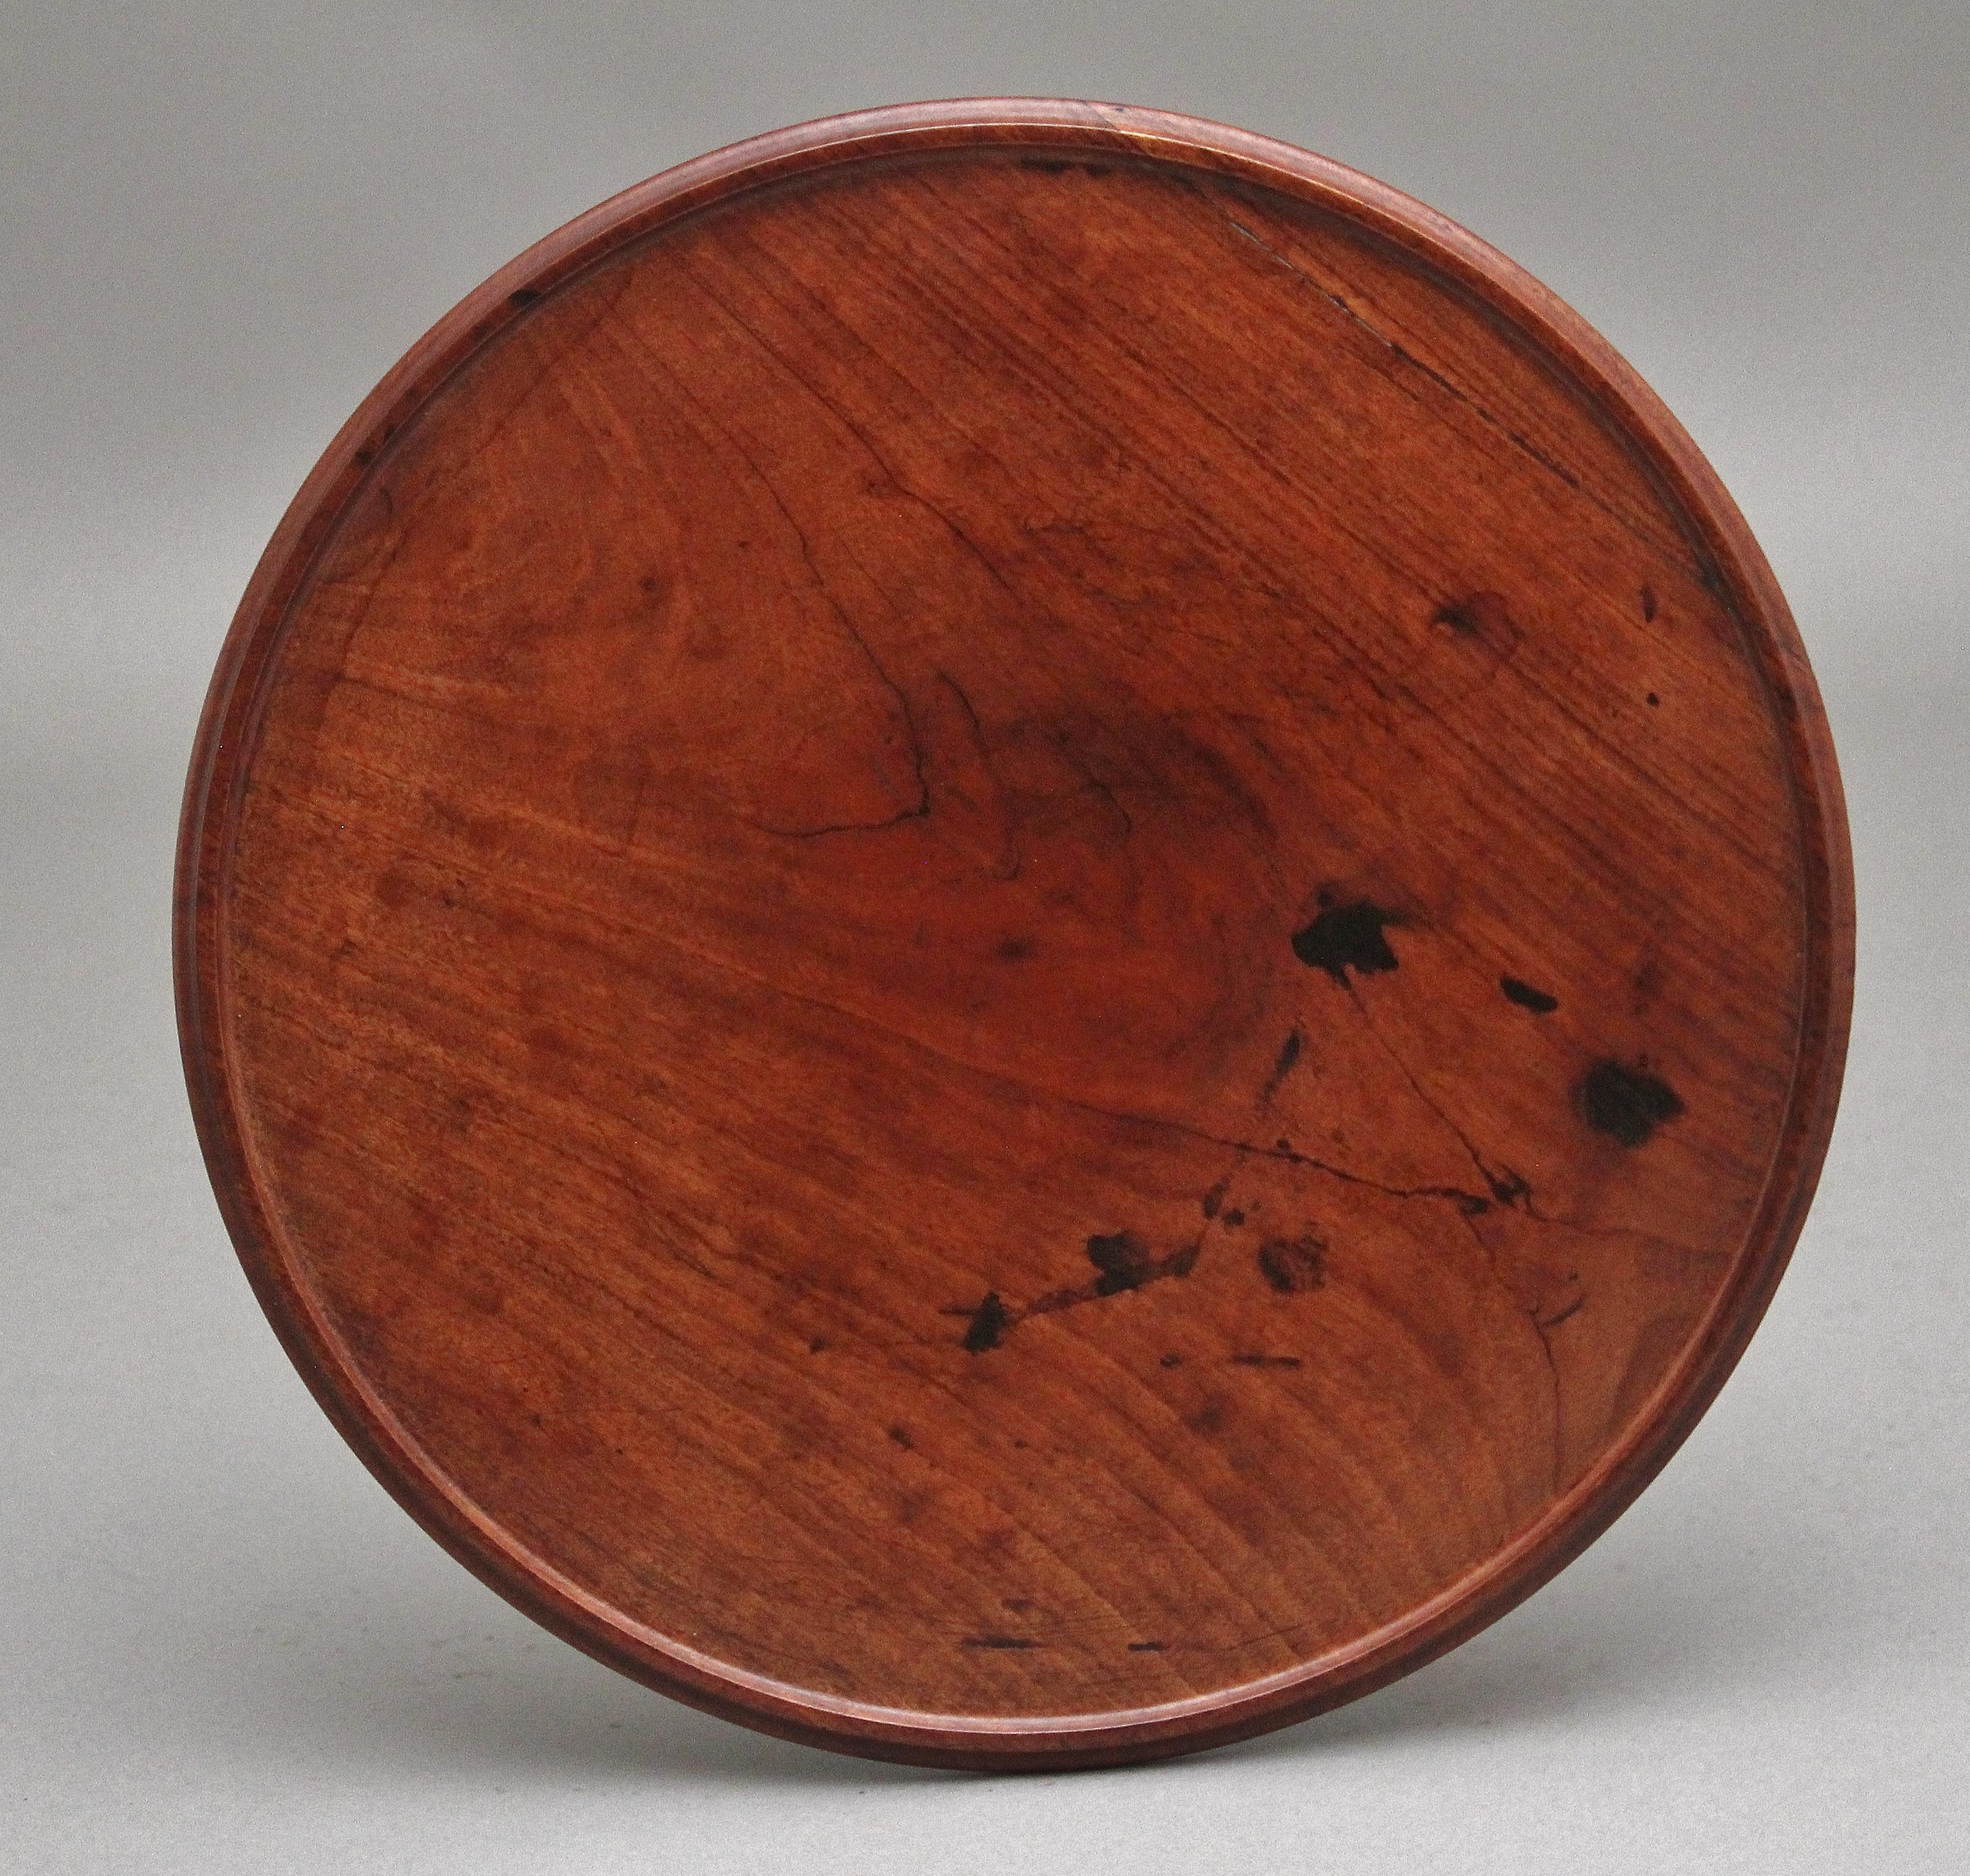 Beistelltisch aus Mahagoni des 19. Jahrhunderts, die runde gewölbte Platte ruht auf einer dekorativen Gerstenkornsäule, die auf einem runden, auf Rollenfüßen stehenden Sockel endet.  Circa 1860.